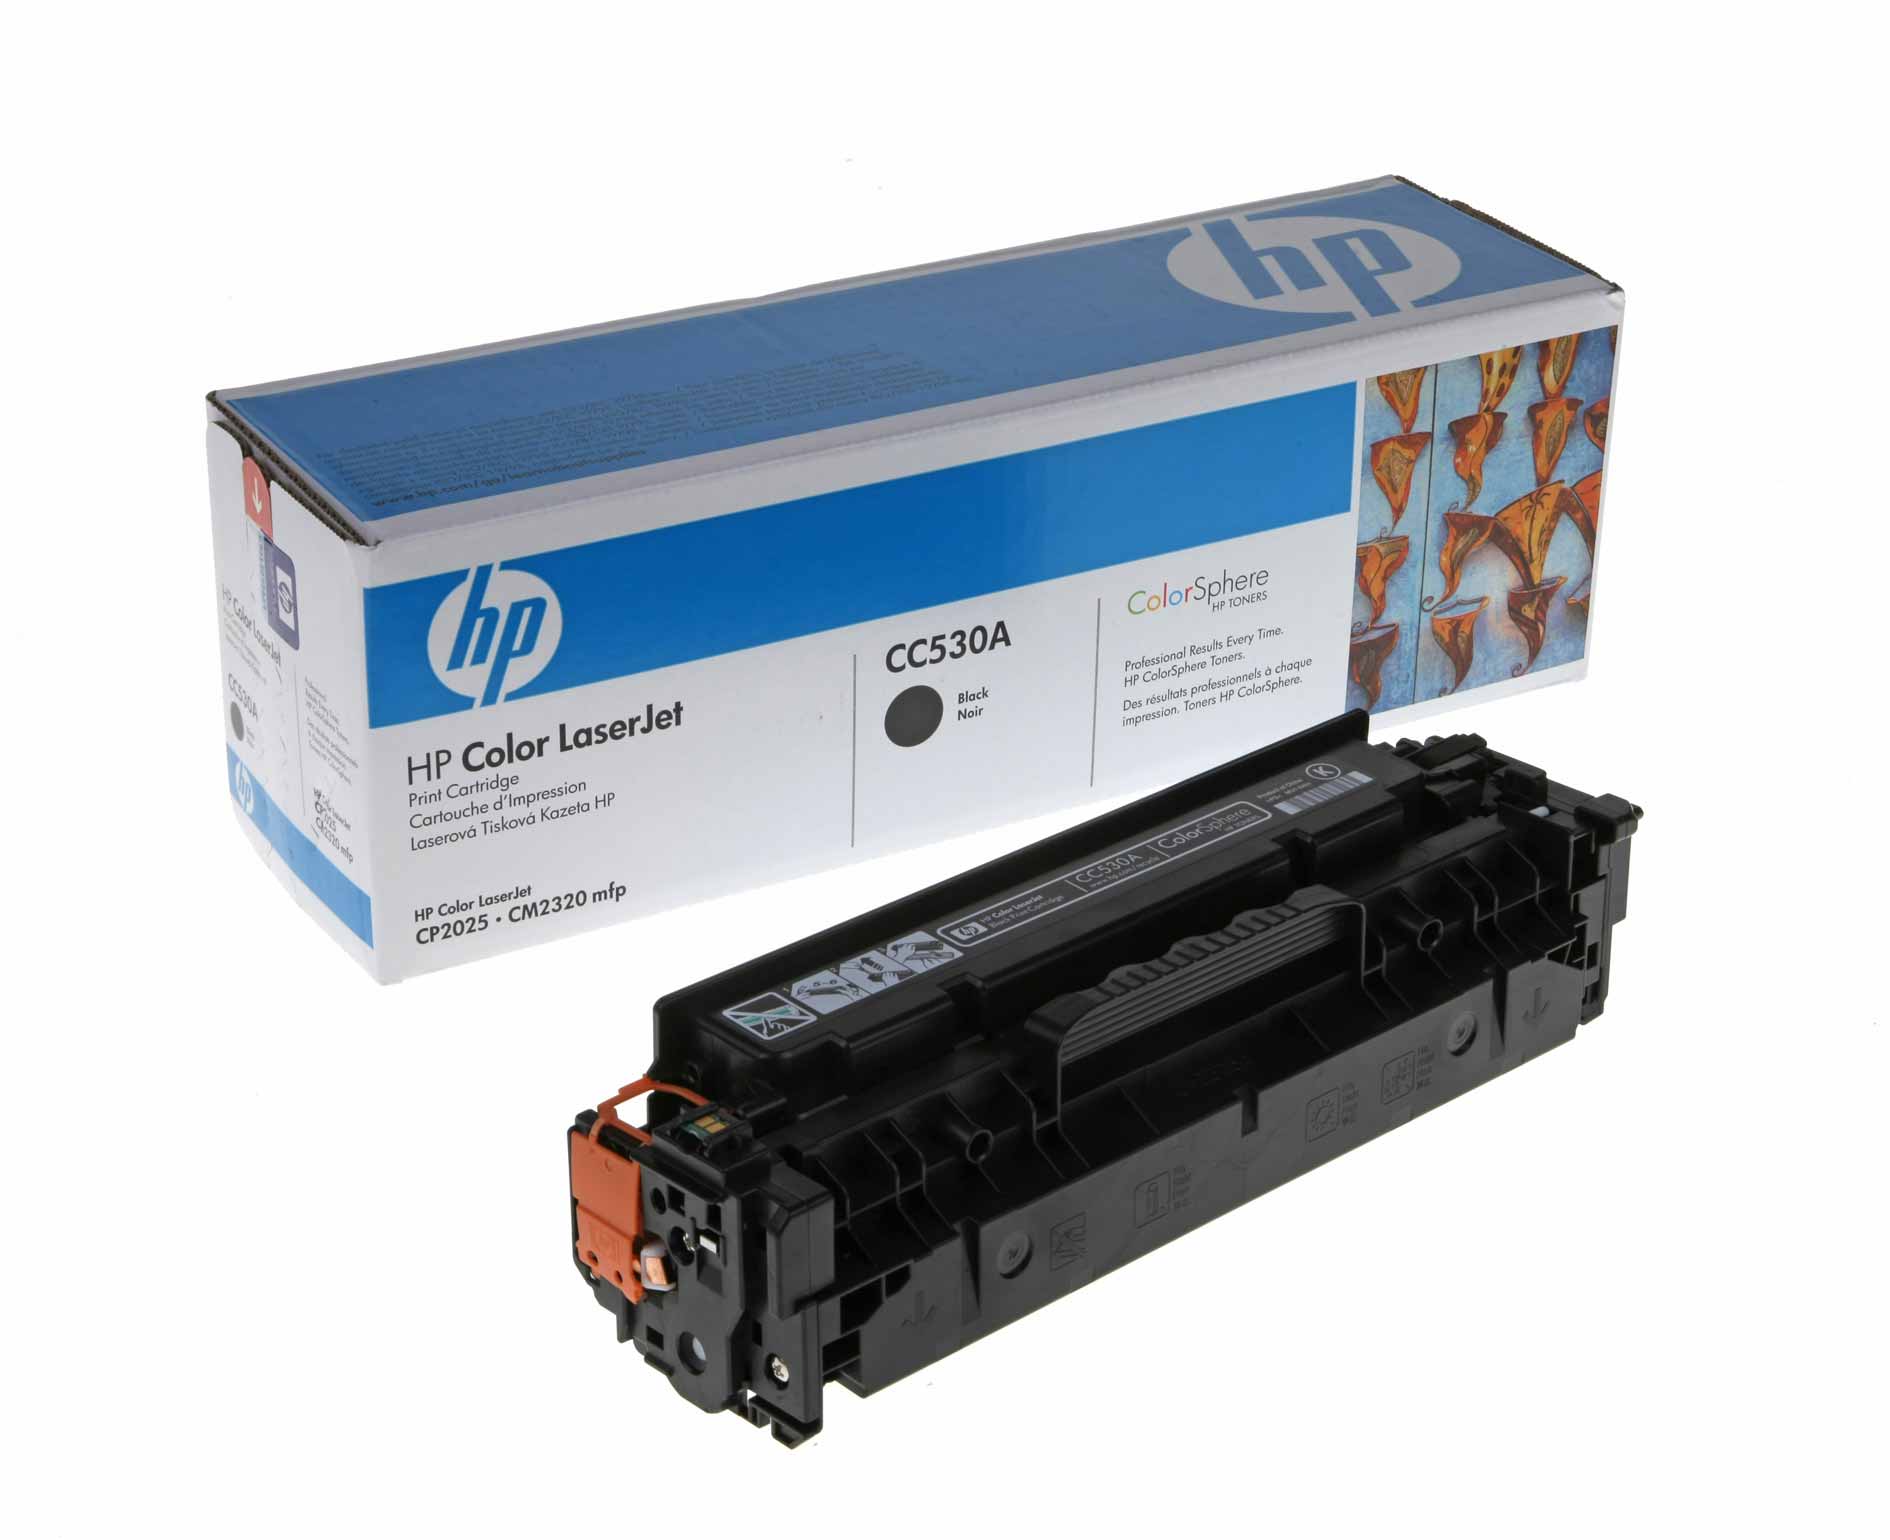 Billede af HP Black Laser Toner (CC530A / 304A) CP2025